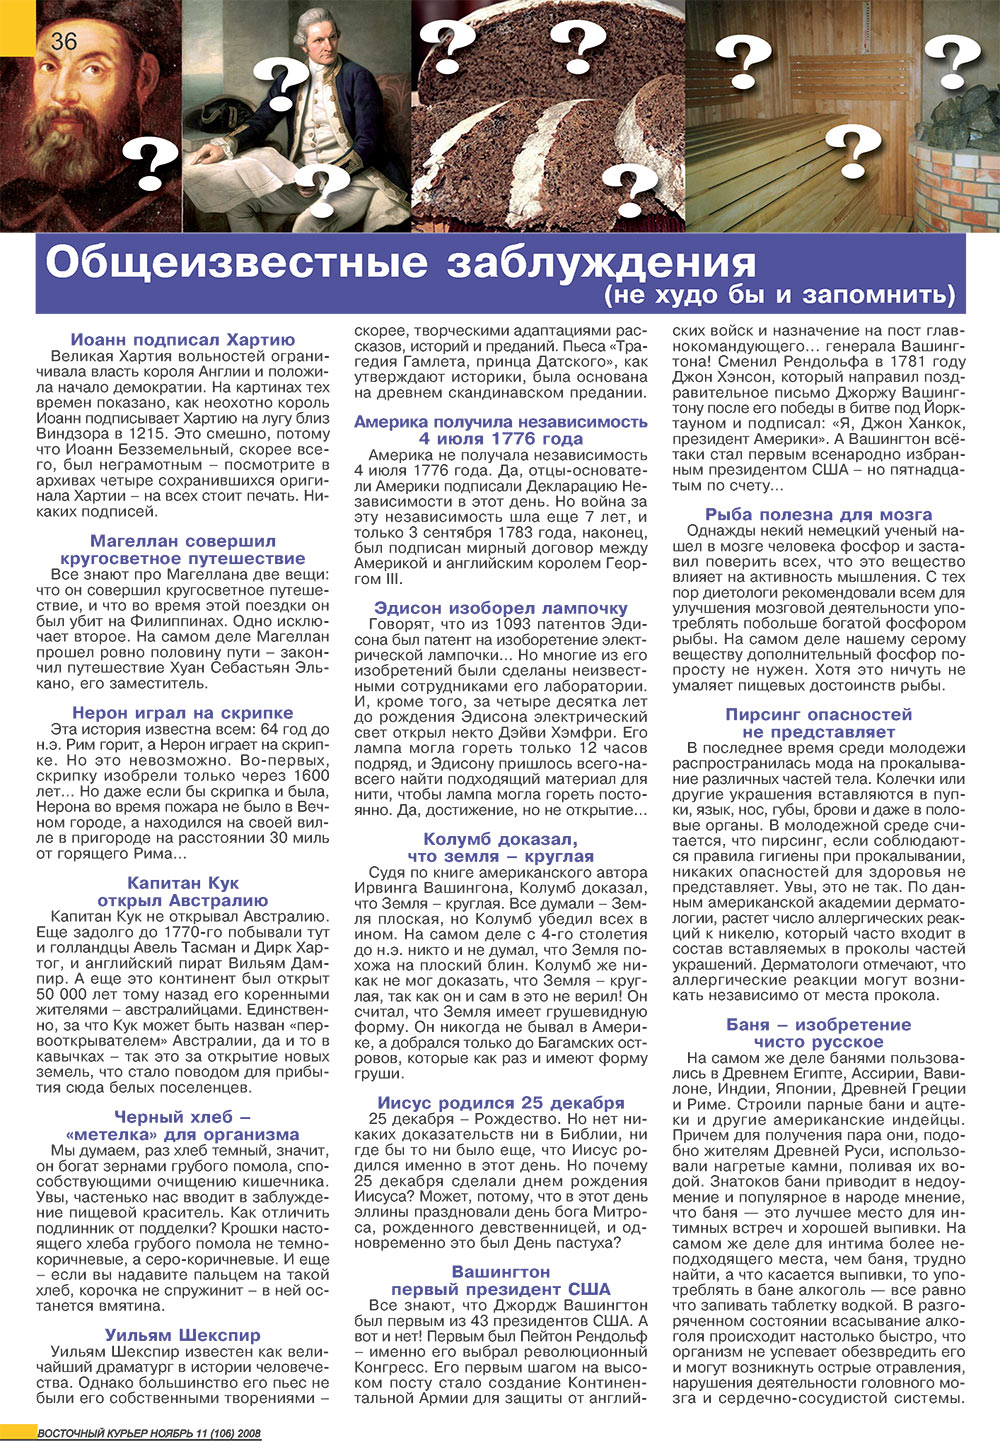 Восточный курьер, журнал. 2008 №11 стр.36